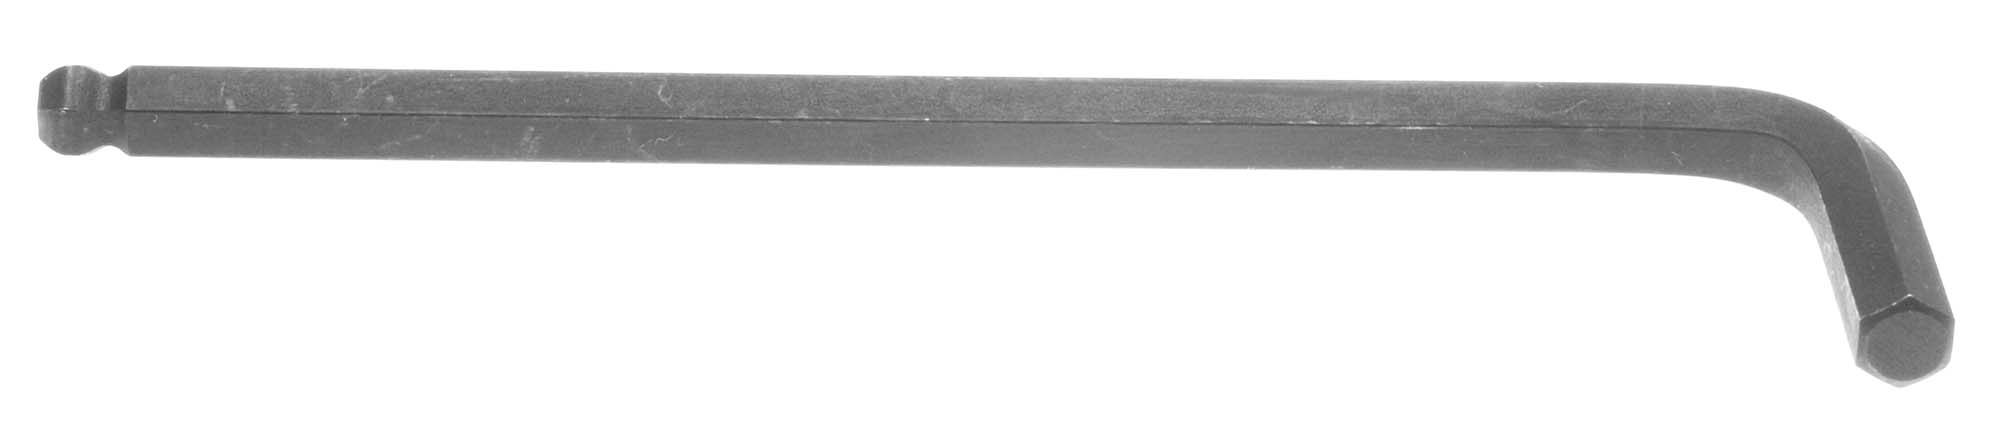 Bondhus 10916 1/2" Balldriver L-Wrench Hex Key